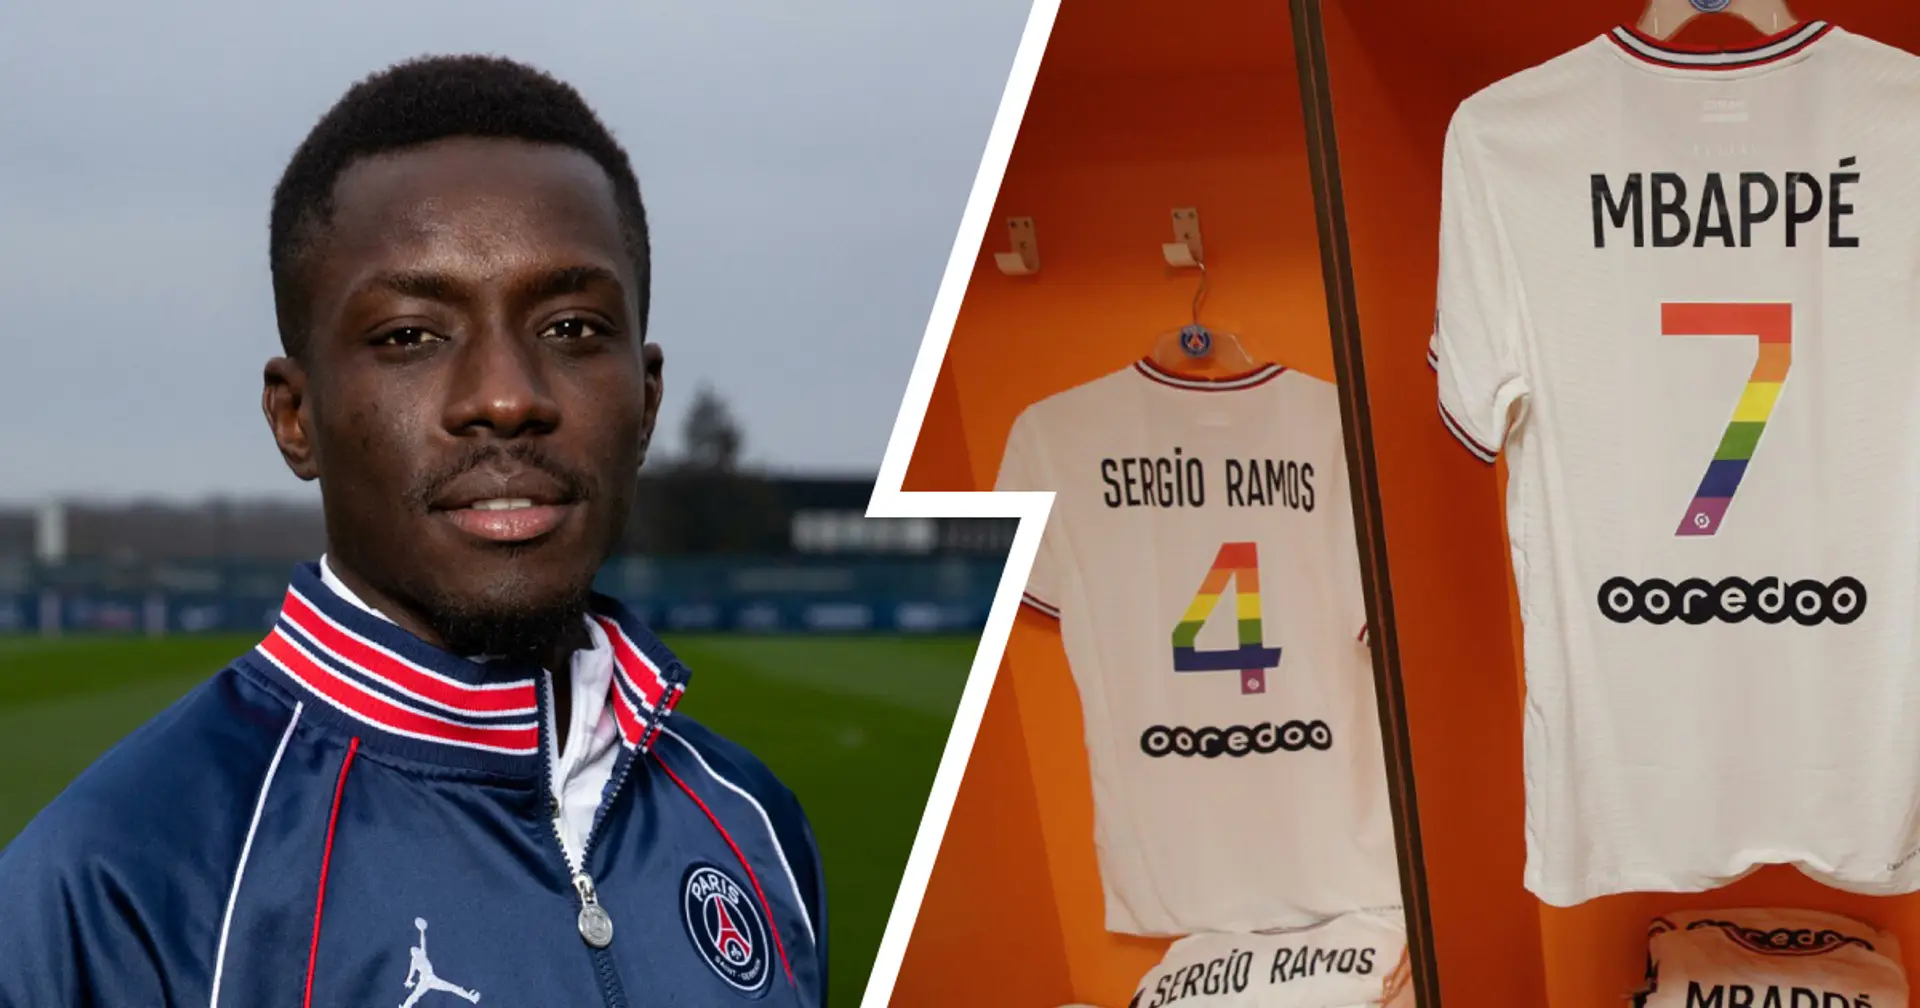 Idrissa Gueye von PSG wird "im Senegal als Held wahrgenommen", nachdem er sich geweigert hatte, ein Regenbogentrikot zu tragen